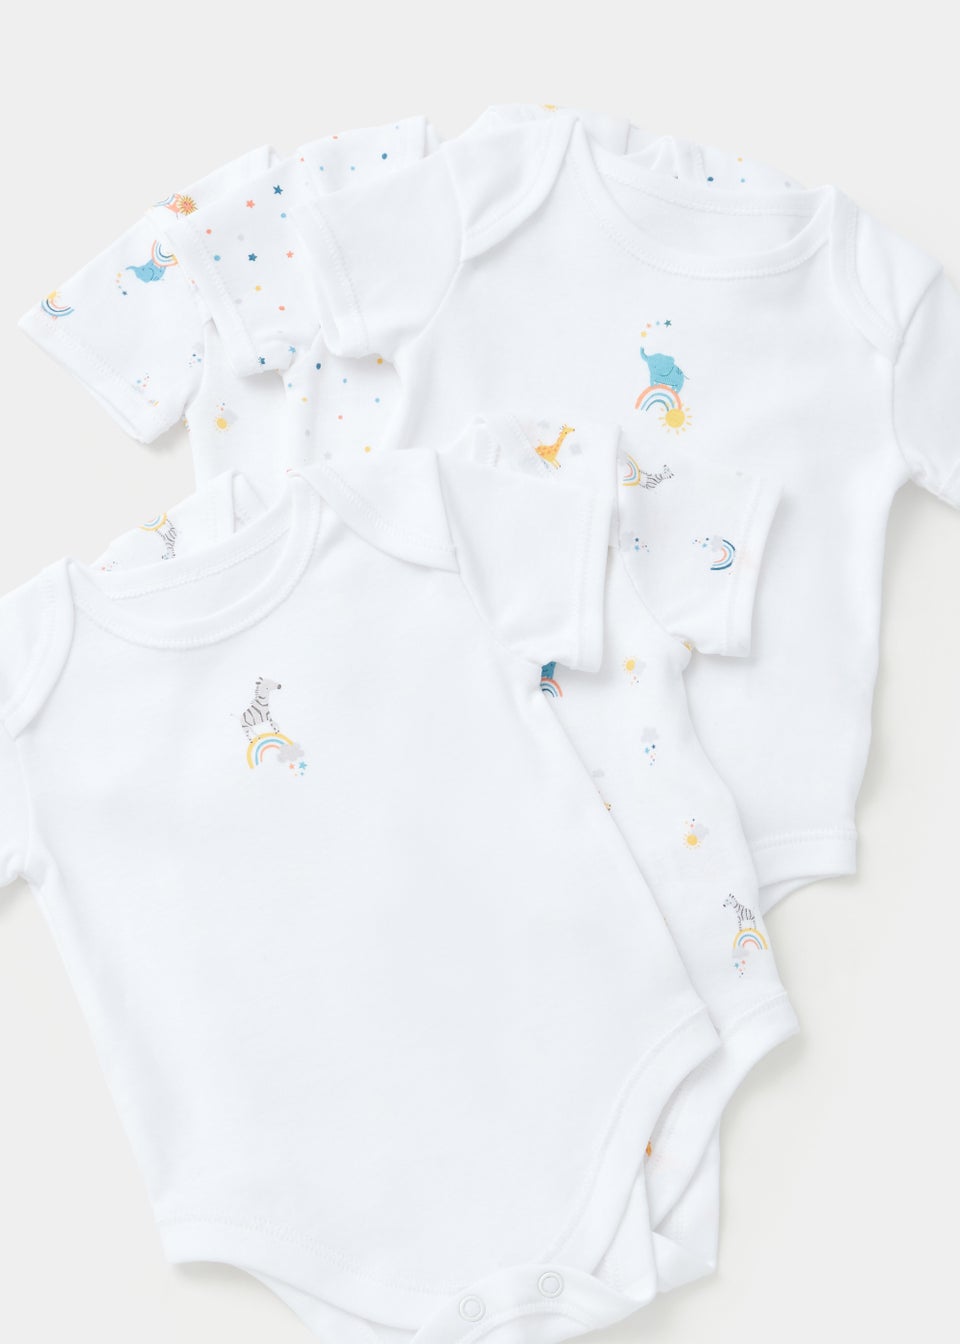 Baby 5 Pack White Rainbow Safari Animal Bodysuits (Newborn-23mths)